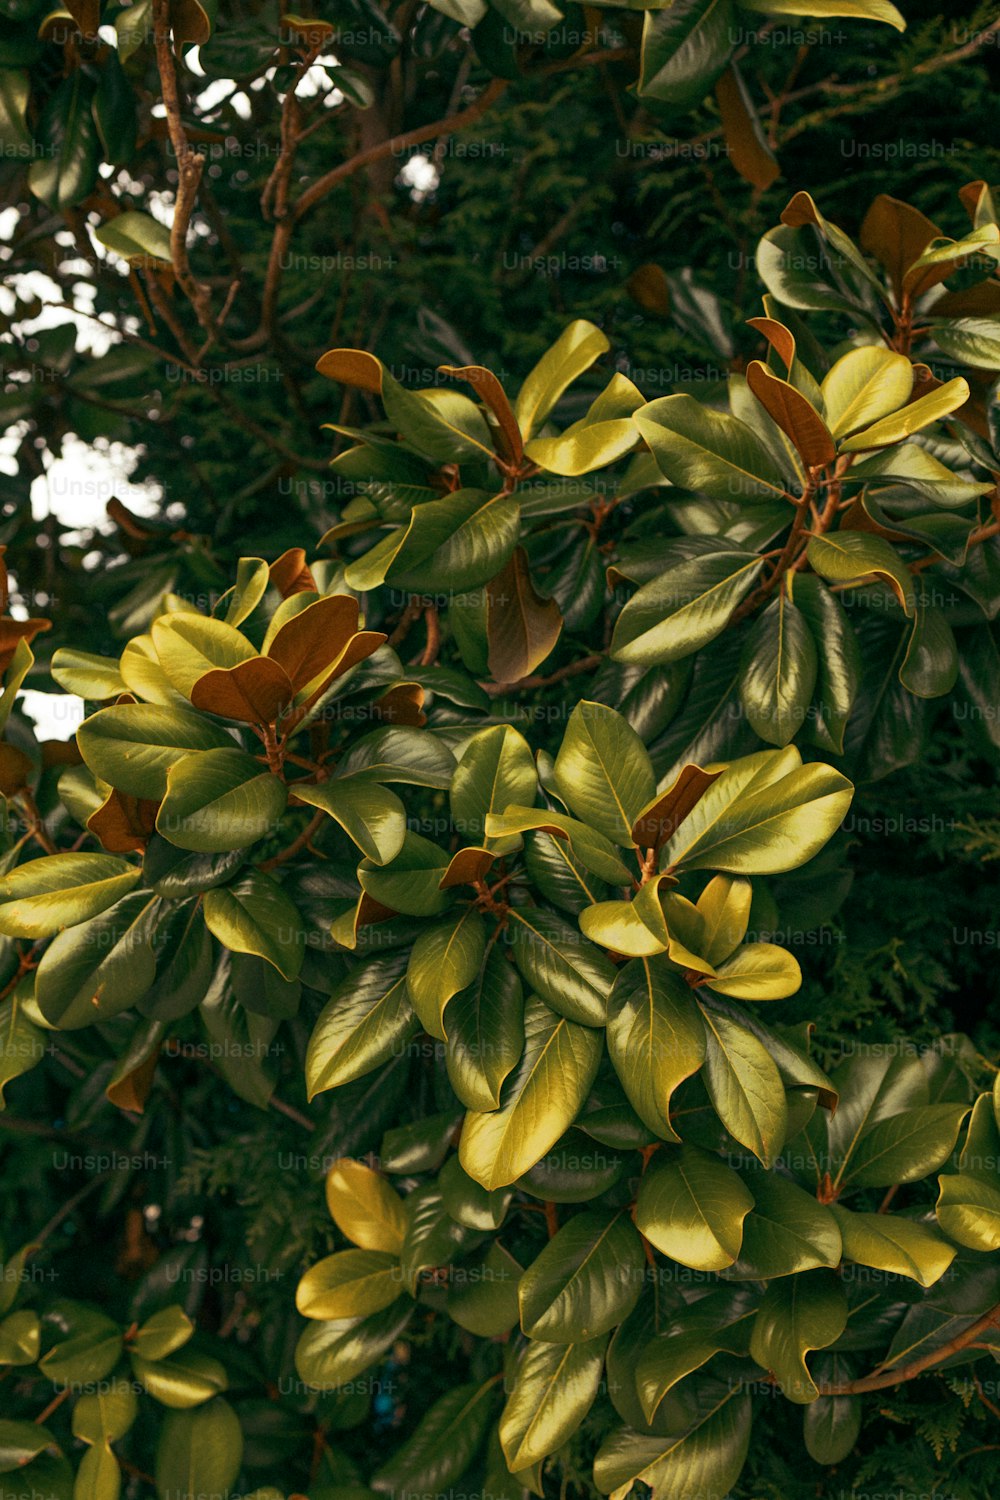 um close up de uma árvore com folhas verdes